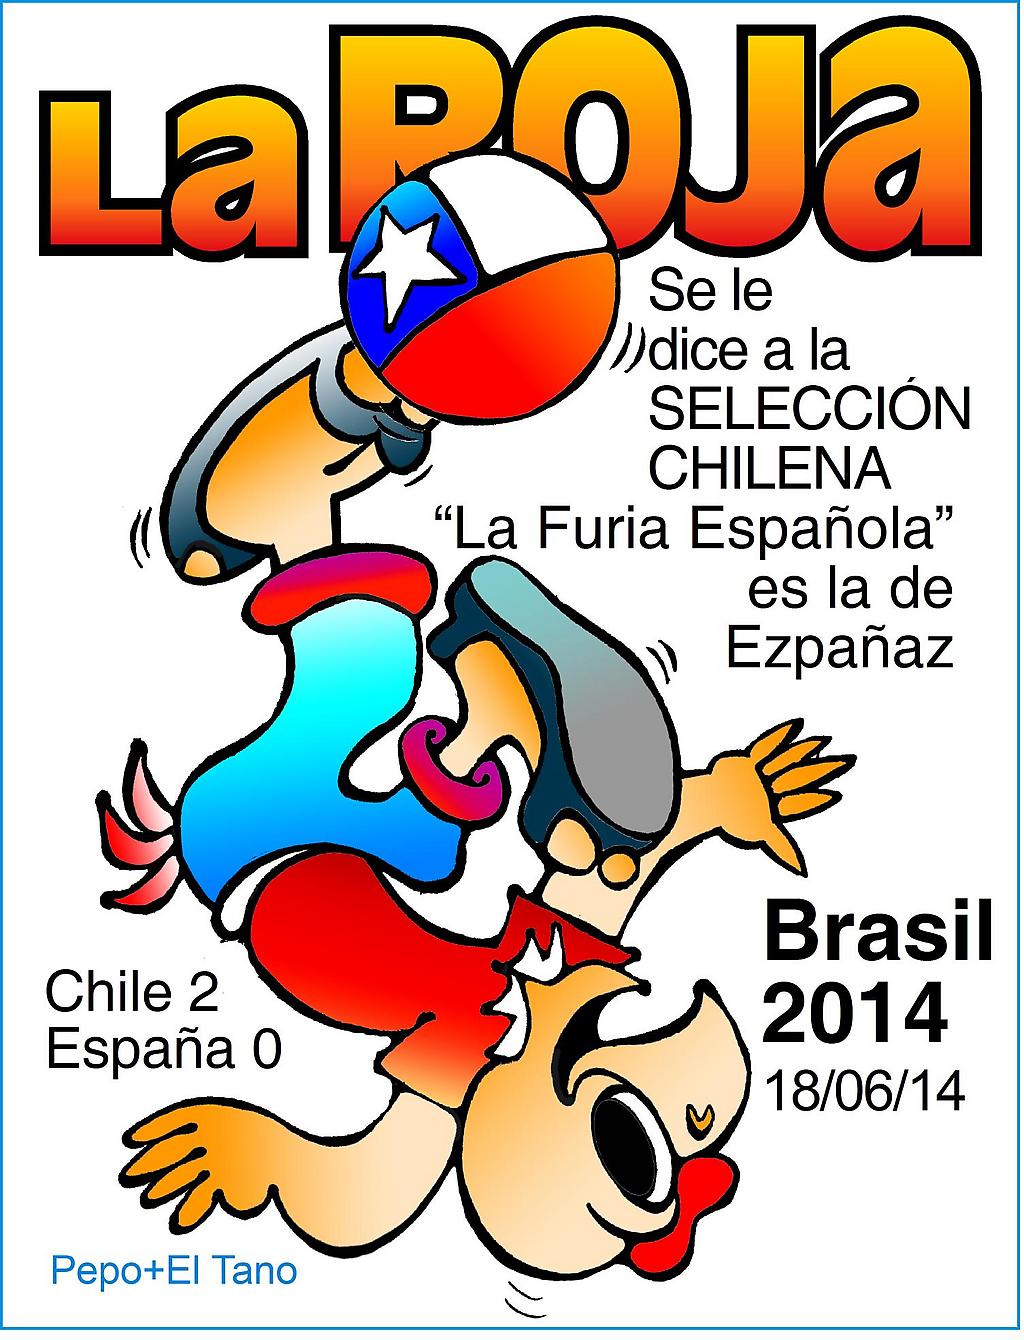 Afiche "Condorito La Roja", con texto de recuerdo
del partido España-Chile del viernes 13 de Junio de 2014
en el Mundial de Brasil 2014